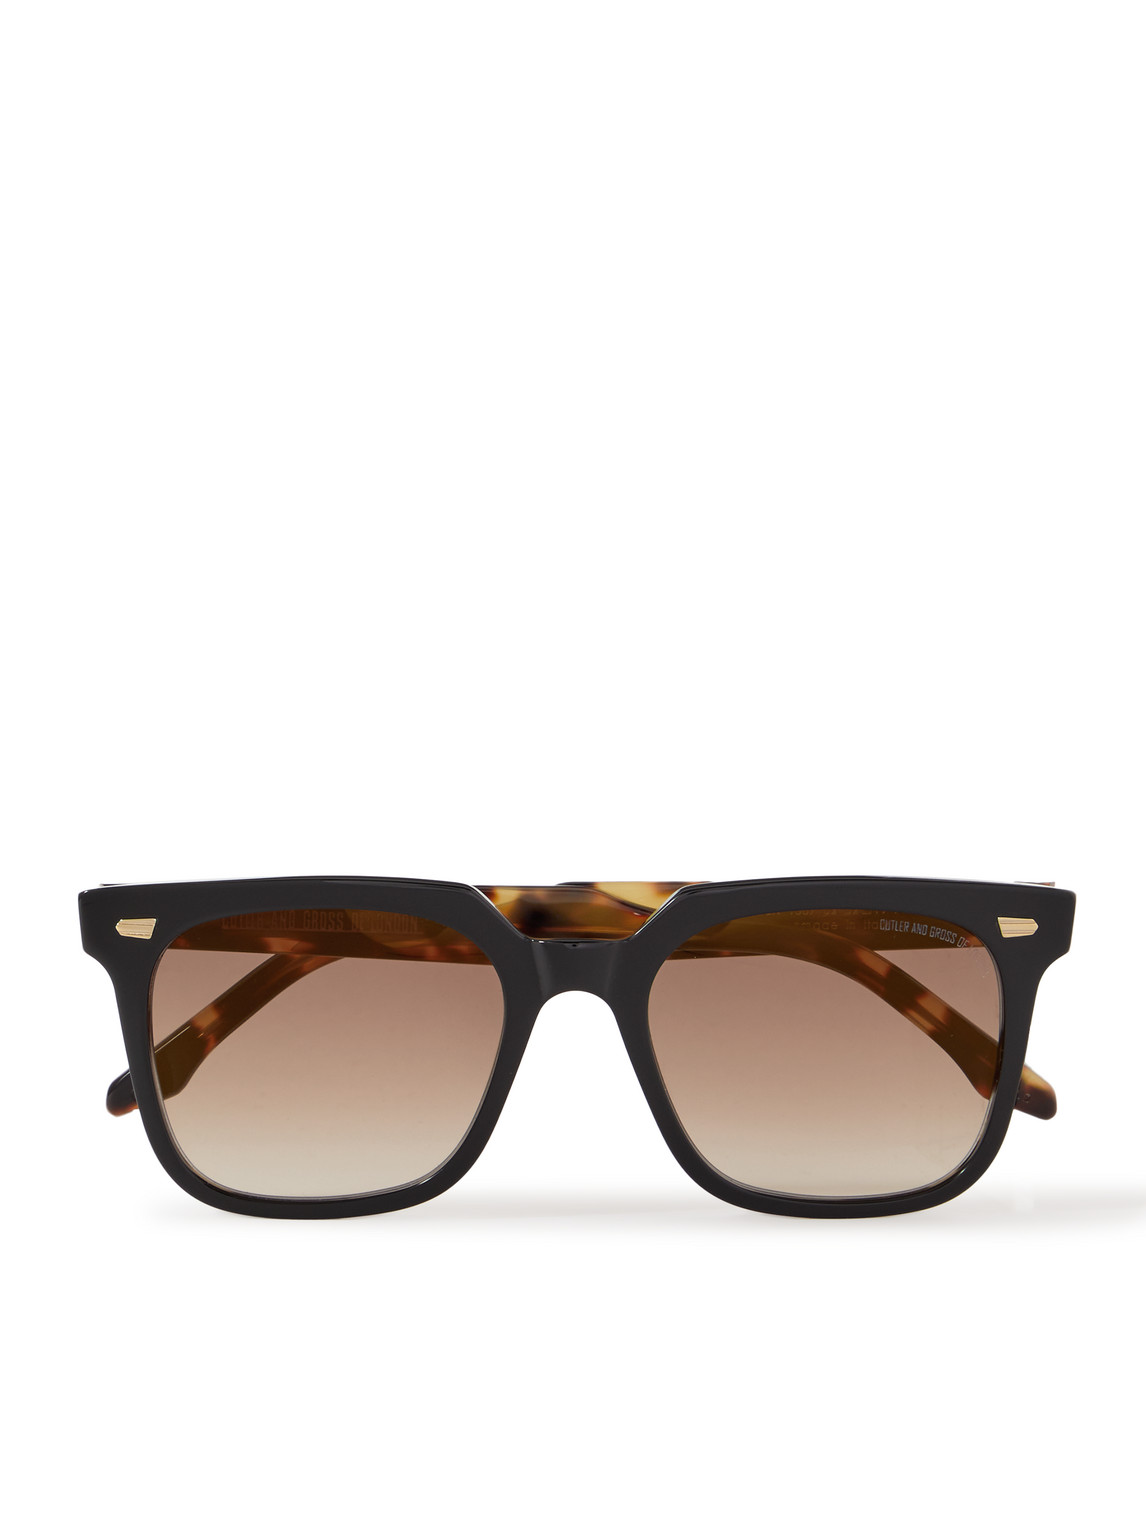 Cutler And Gross 1387 Square-frame Tortoiseshell Acetate Sunglasses